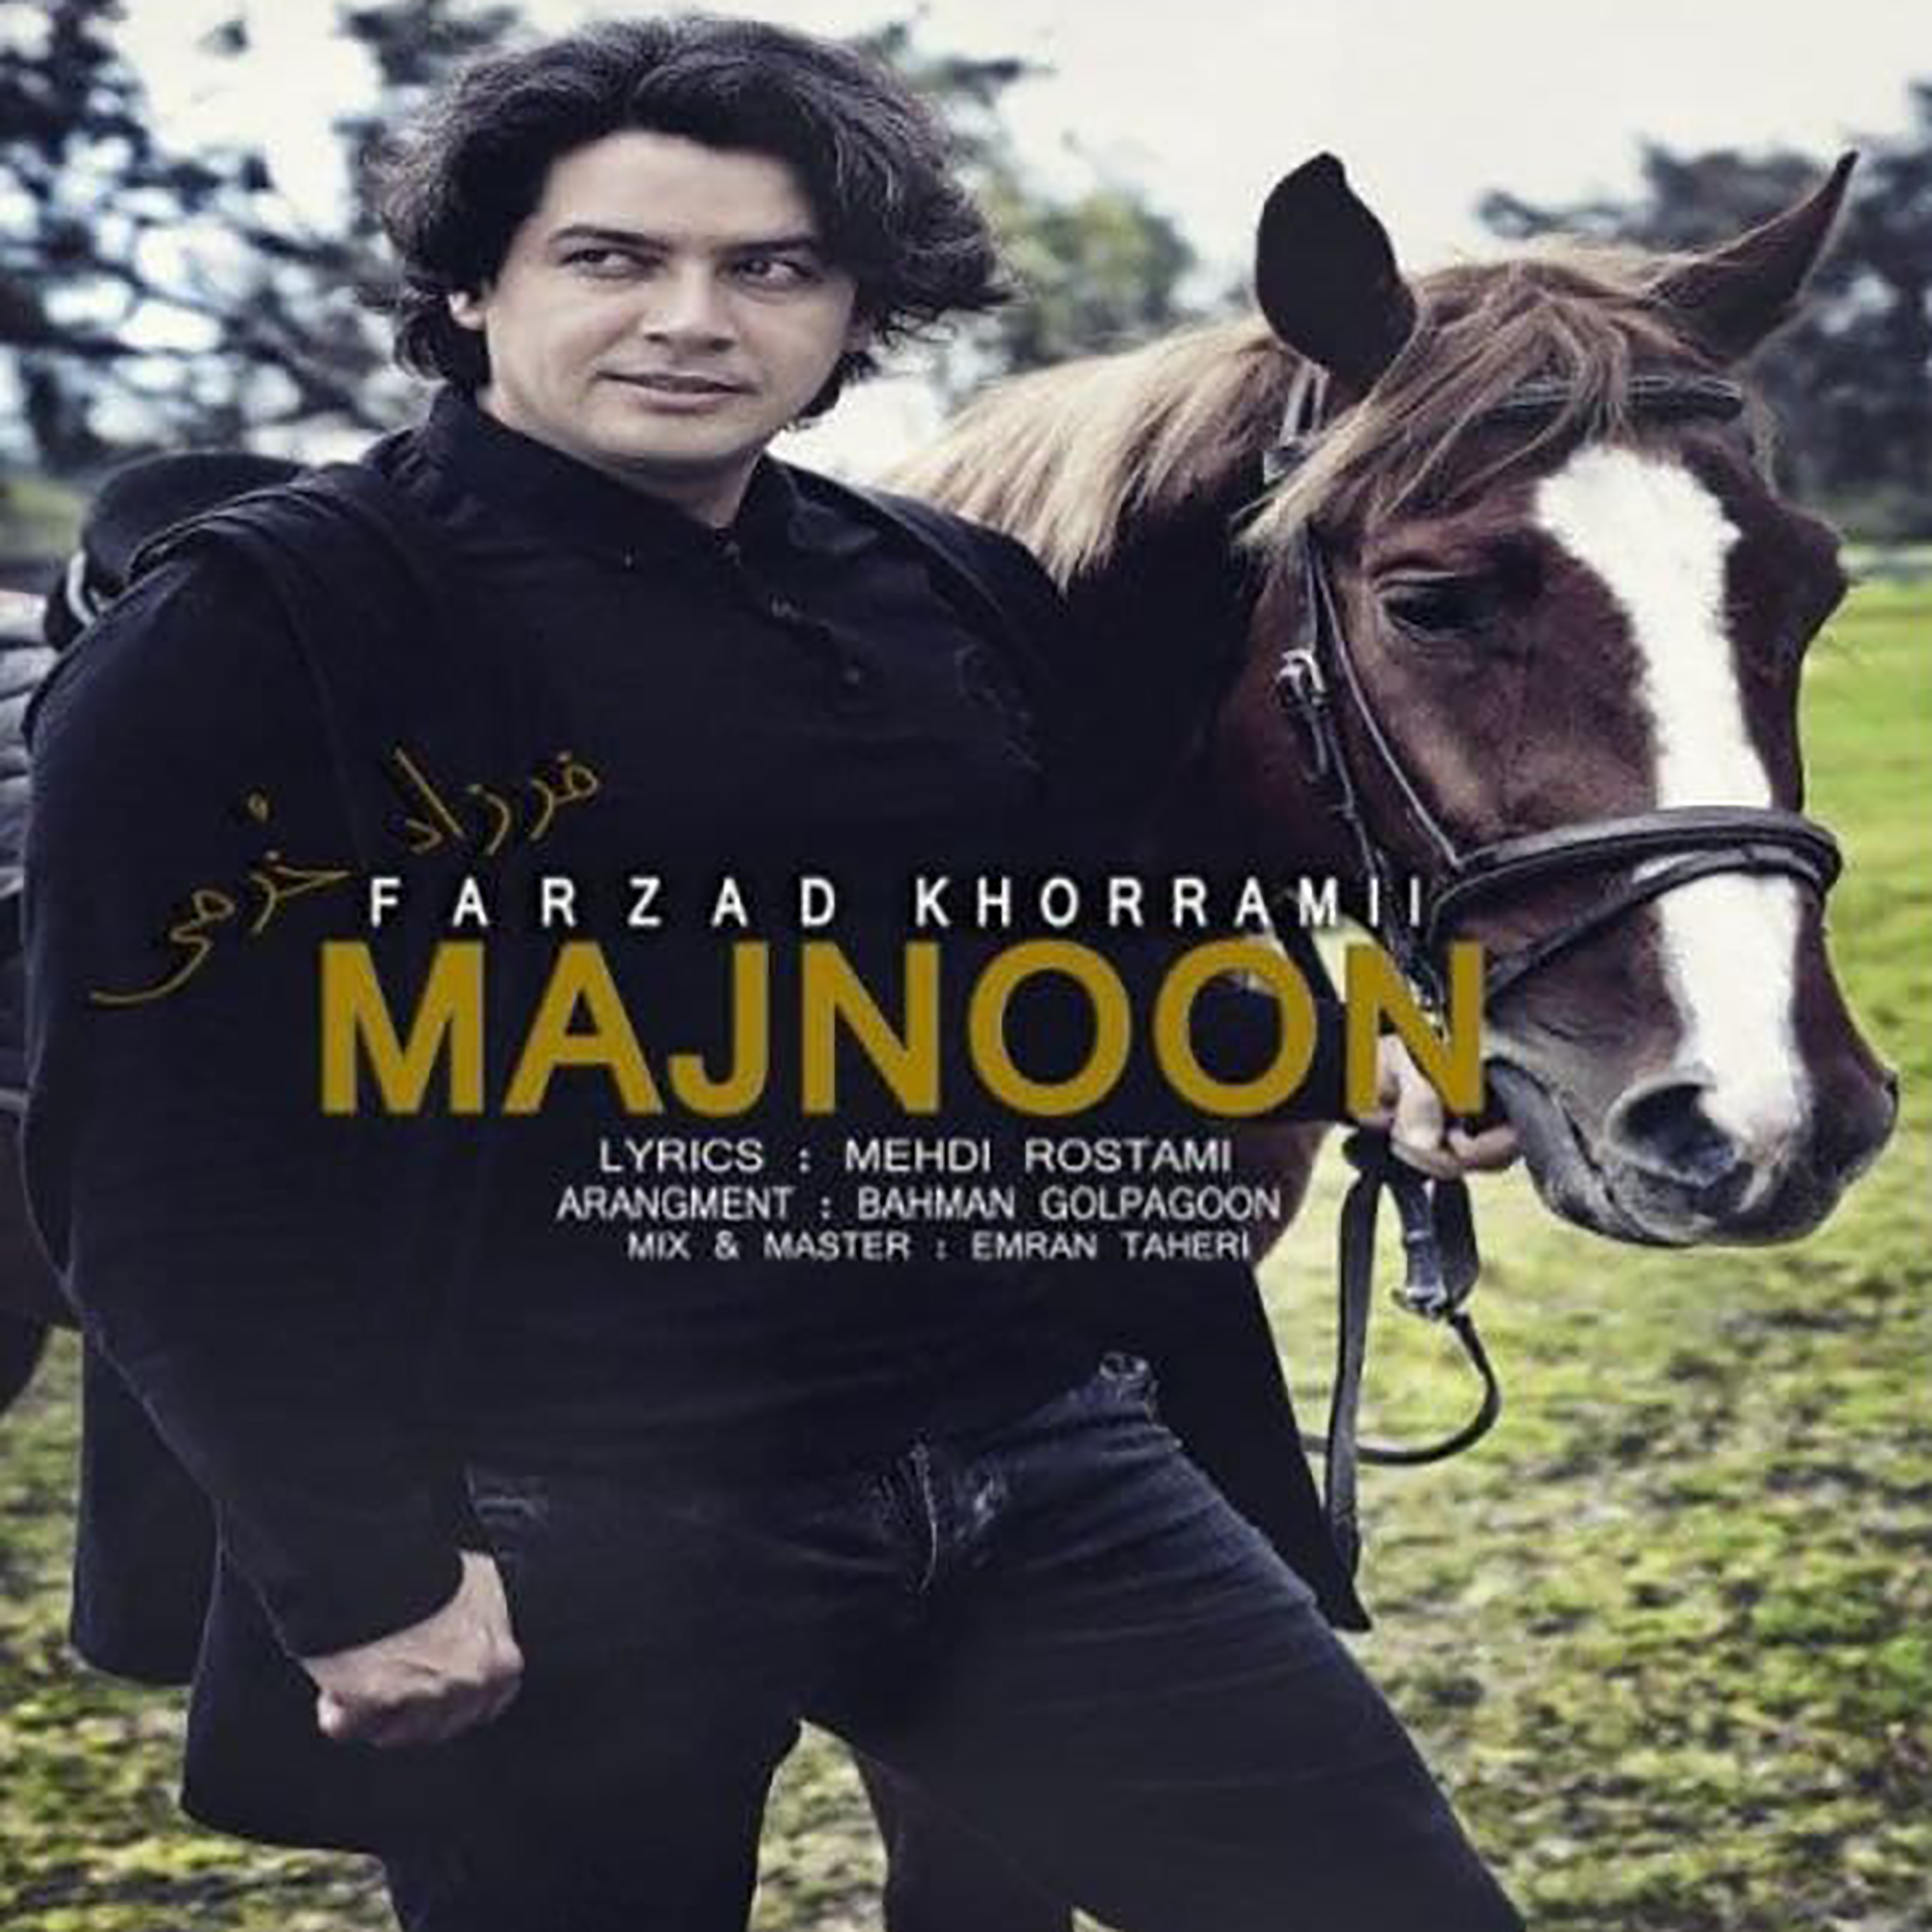  دانلود آهنگ جدید فرزاد خرمی - مجنون | Download New Music By Farzad Khorrami - Majnoon